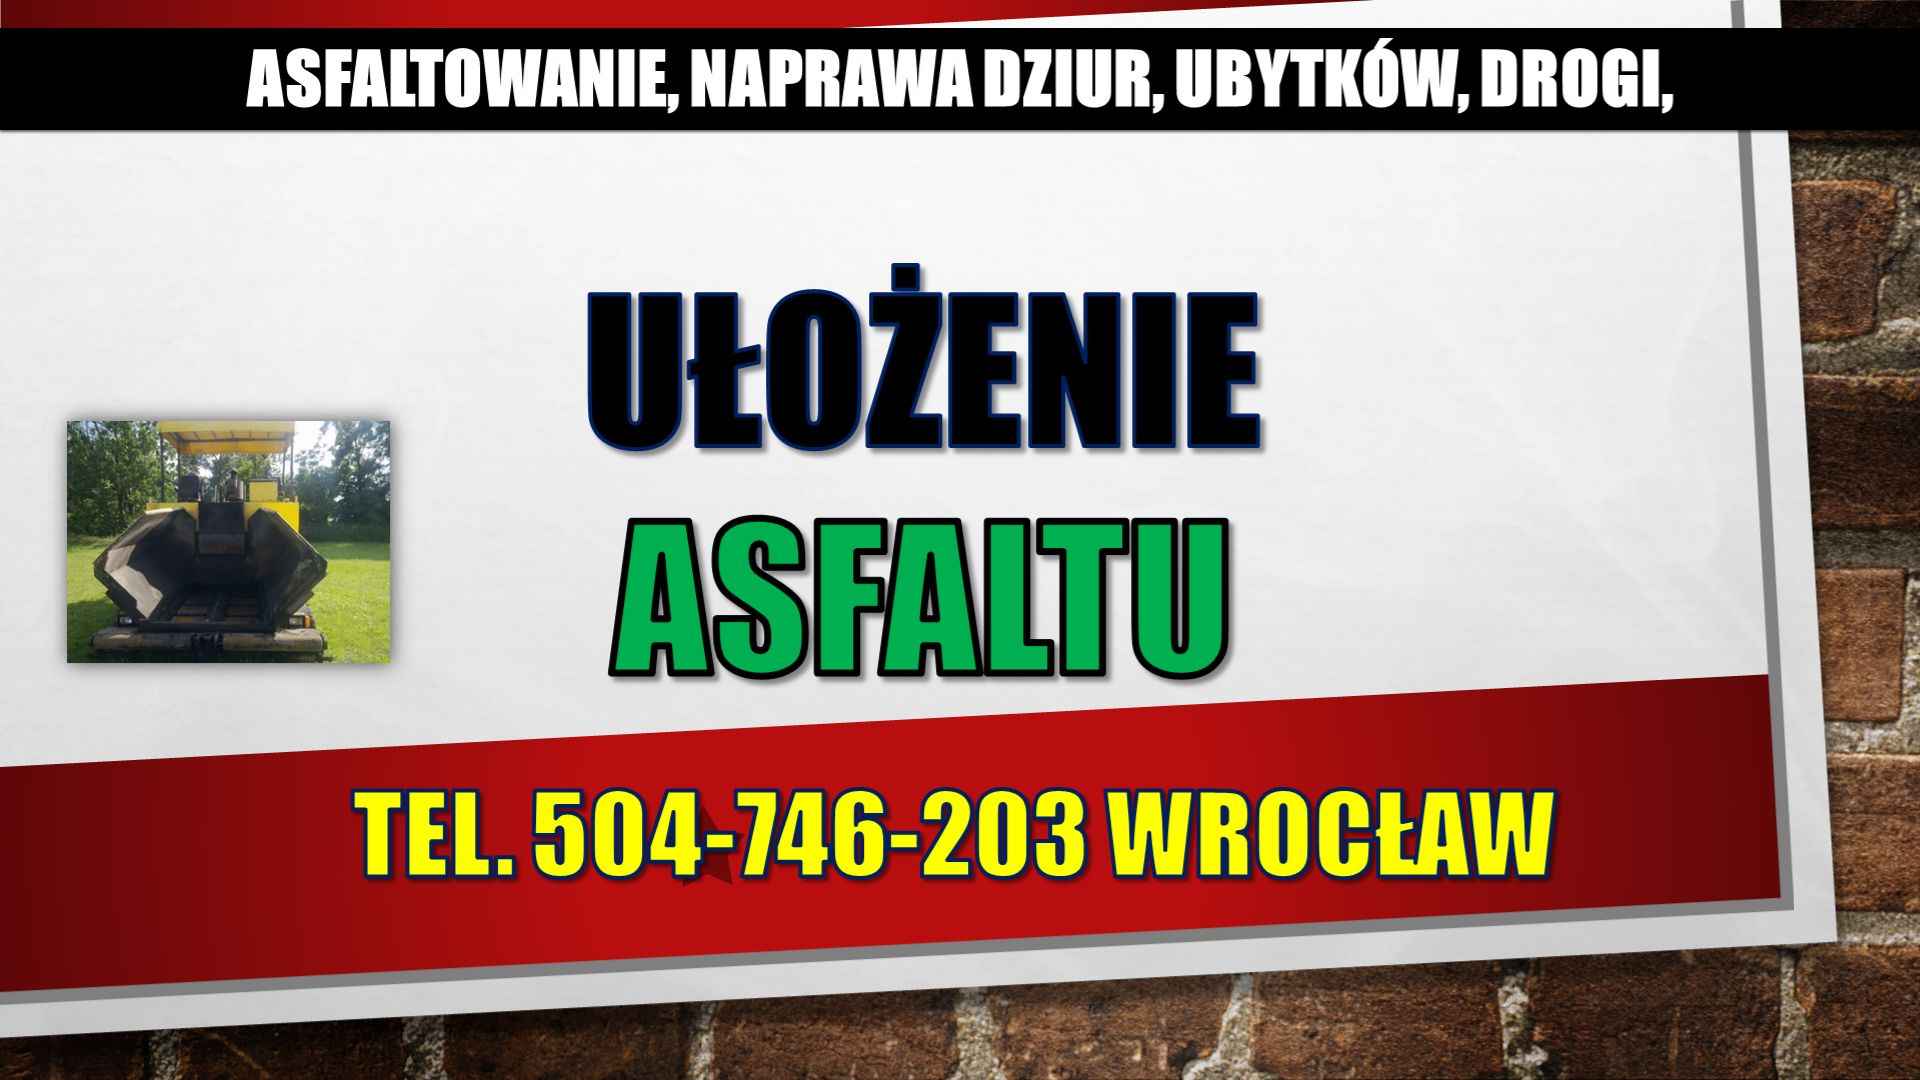 Asflaltowanie, t. 504-746-203, Wrocław, Łódź, Opole, układanie asfaltu Psie Pole - zdjęcie 7